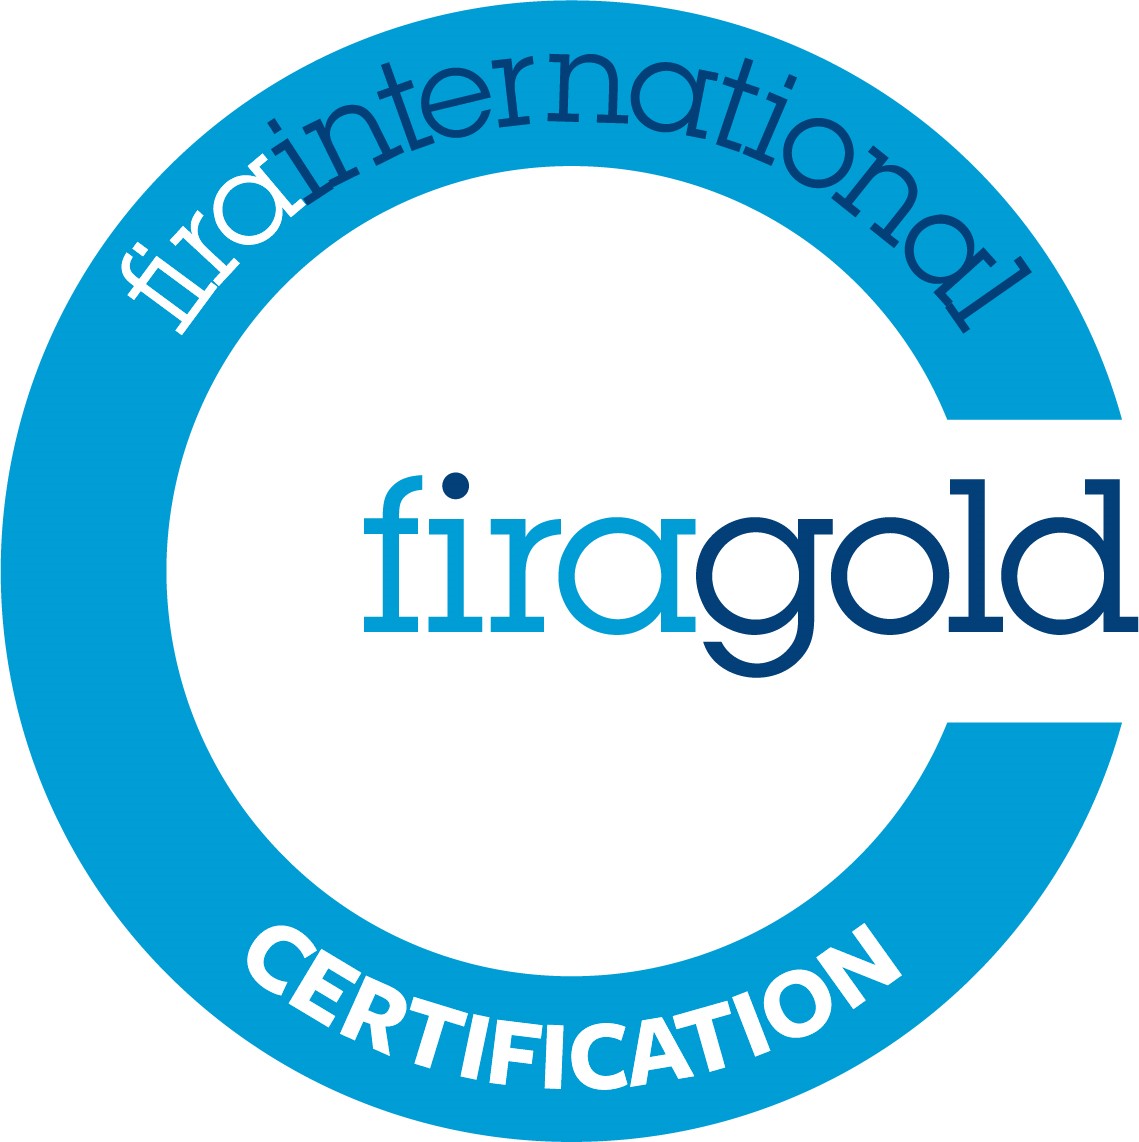 fira gold logo